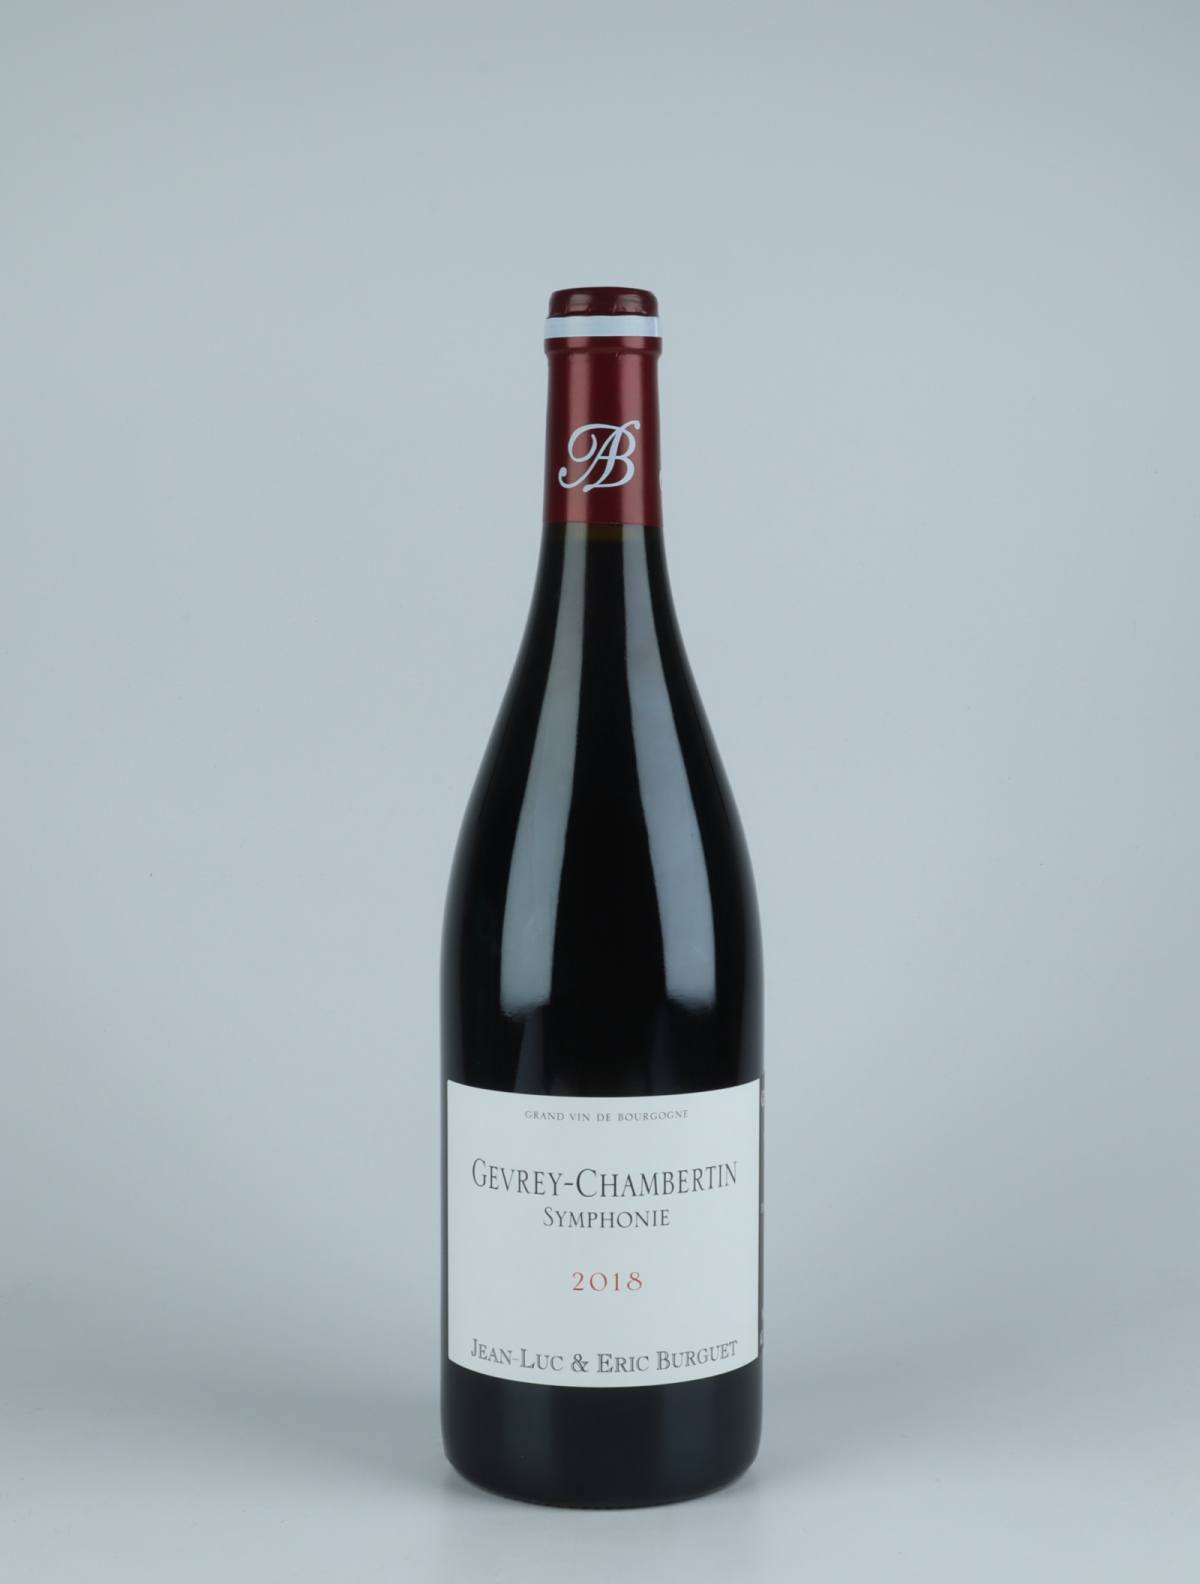 En flaske 2018 Gevrey-Chambertin - Symphonie Rødvin fra Jean-Luc & Eric Burguet, Bourgogne i Frankrig